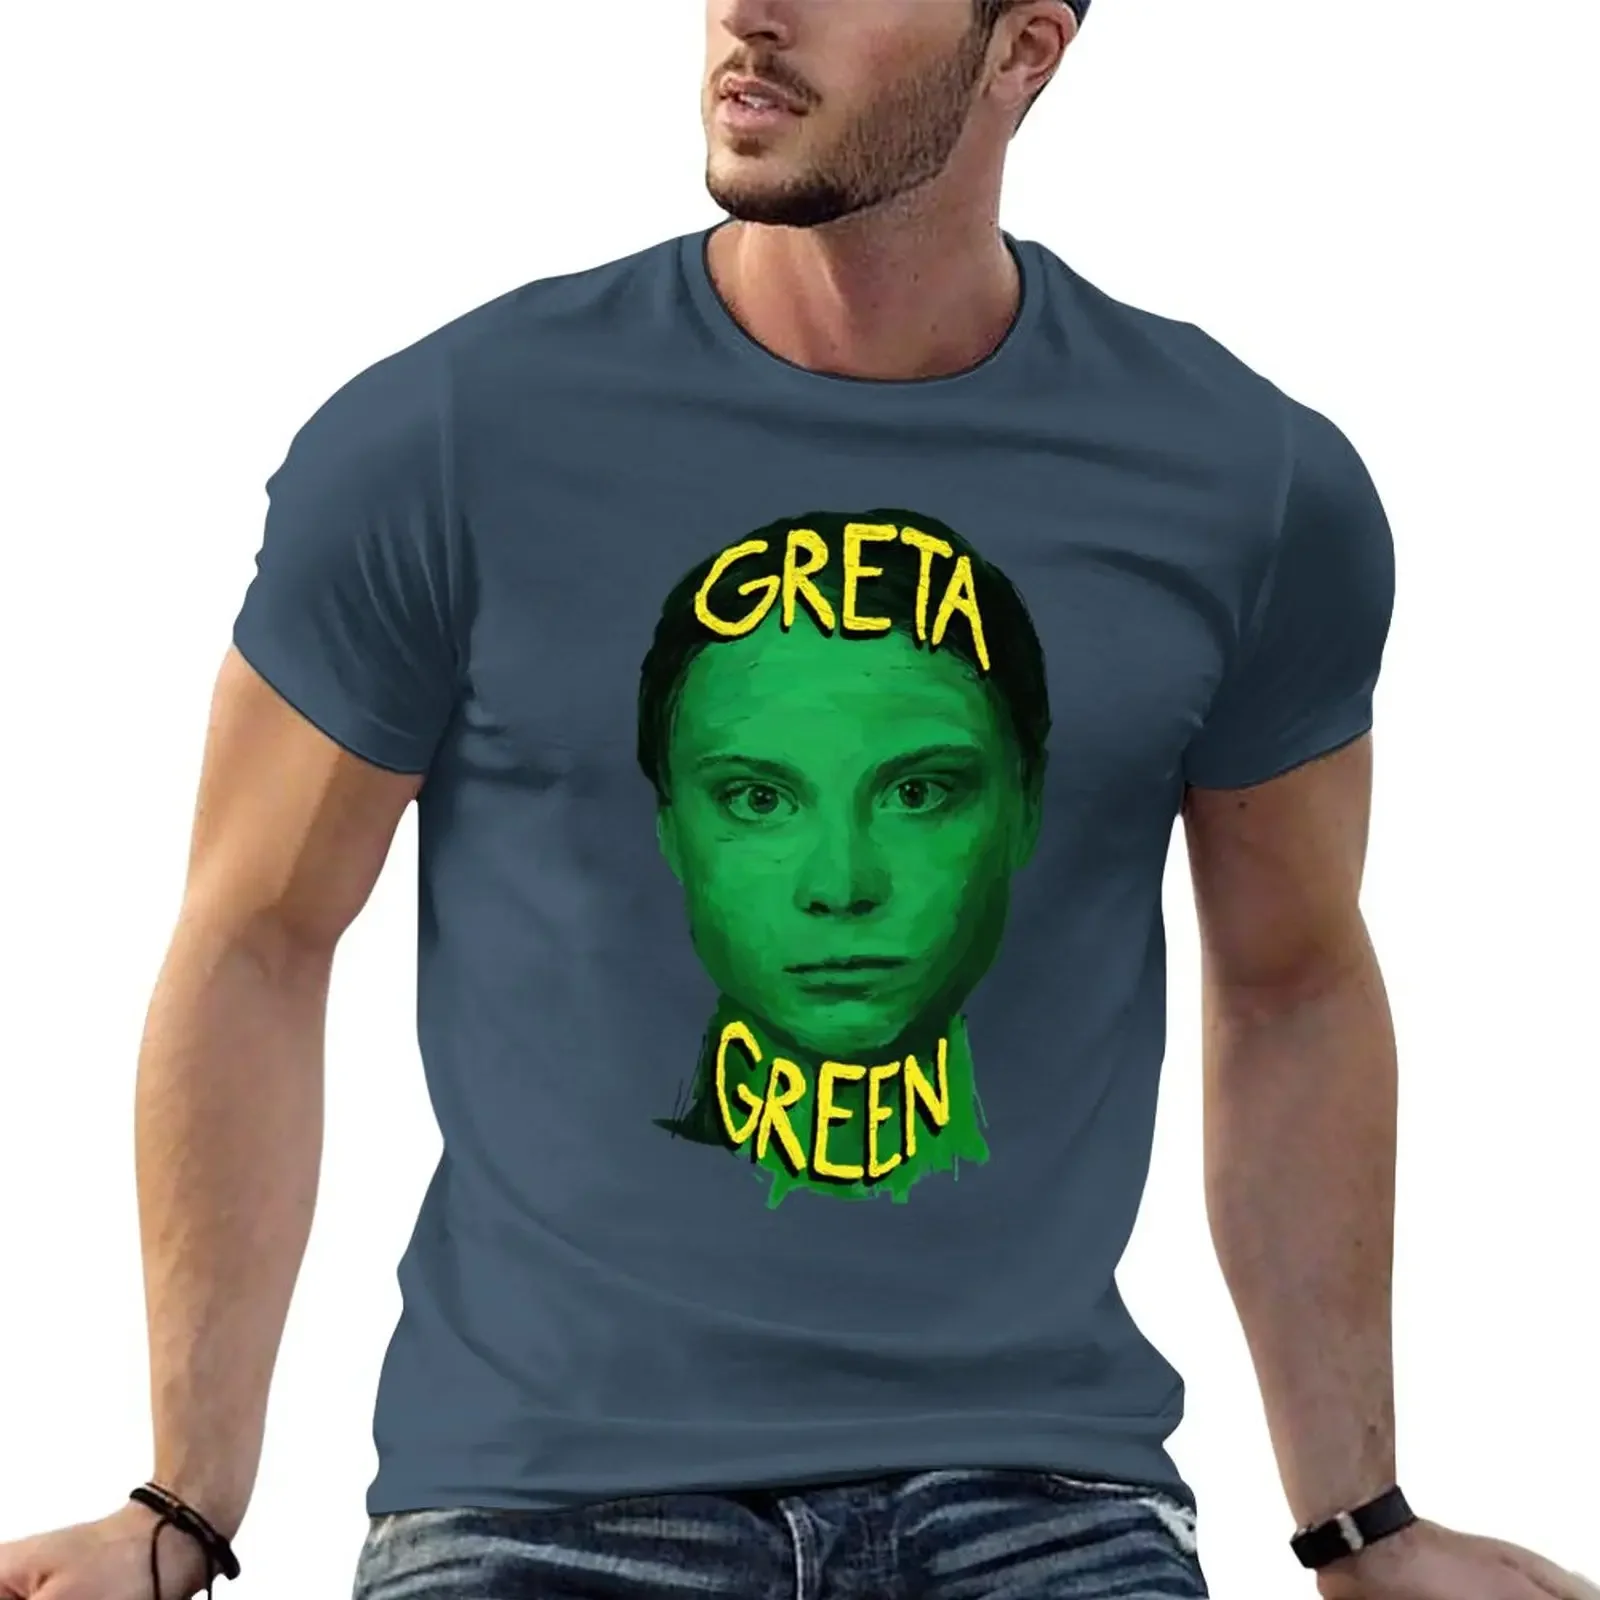 

Зеленая футболка Greta, одежда для хиппи, летние топы, облегающие футболки для мужчин